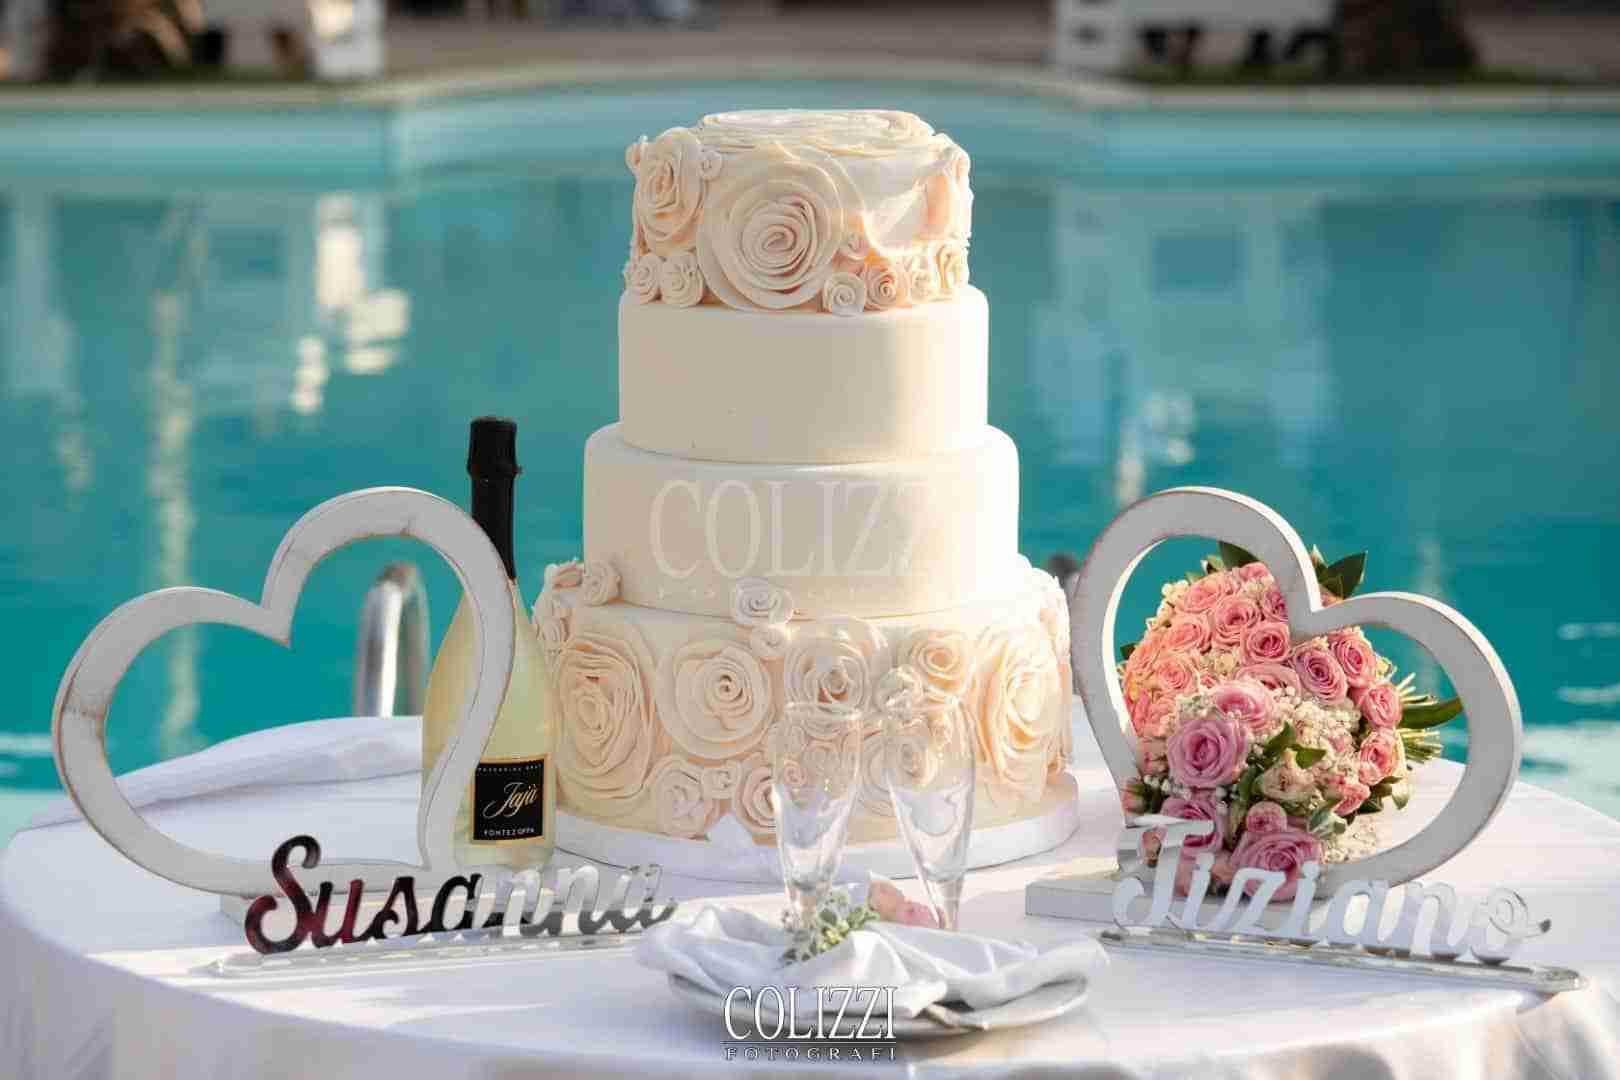 Come scegliere la torta perfetta per le proprie nozze